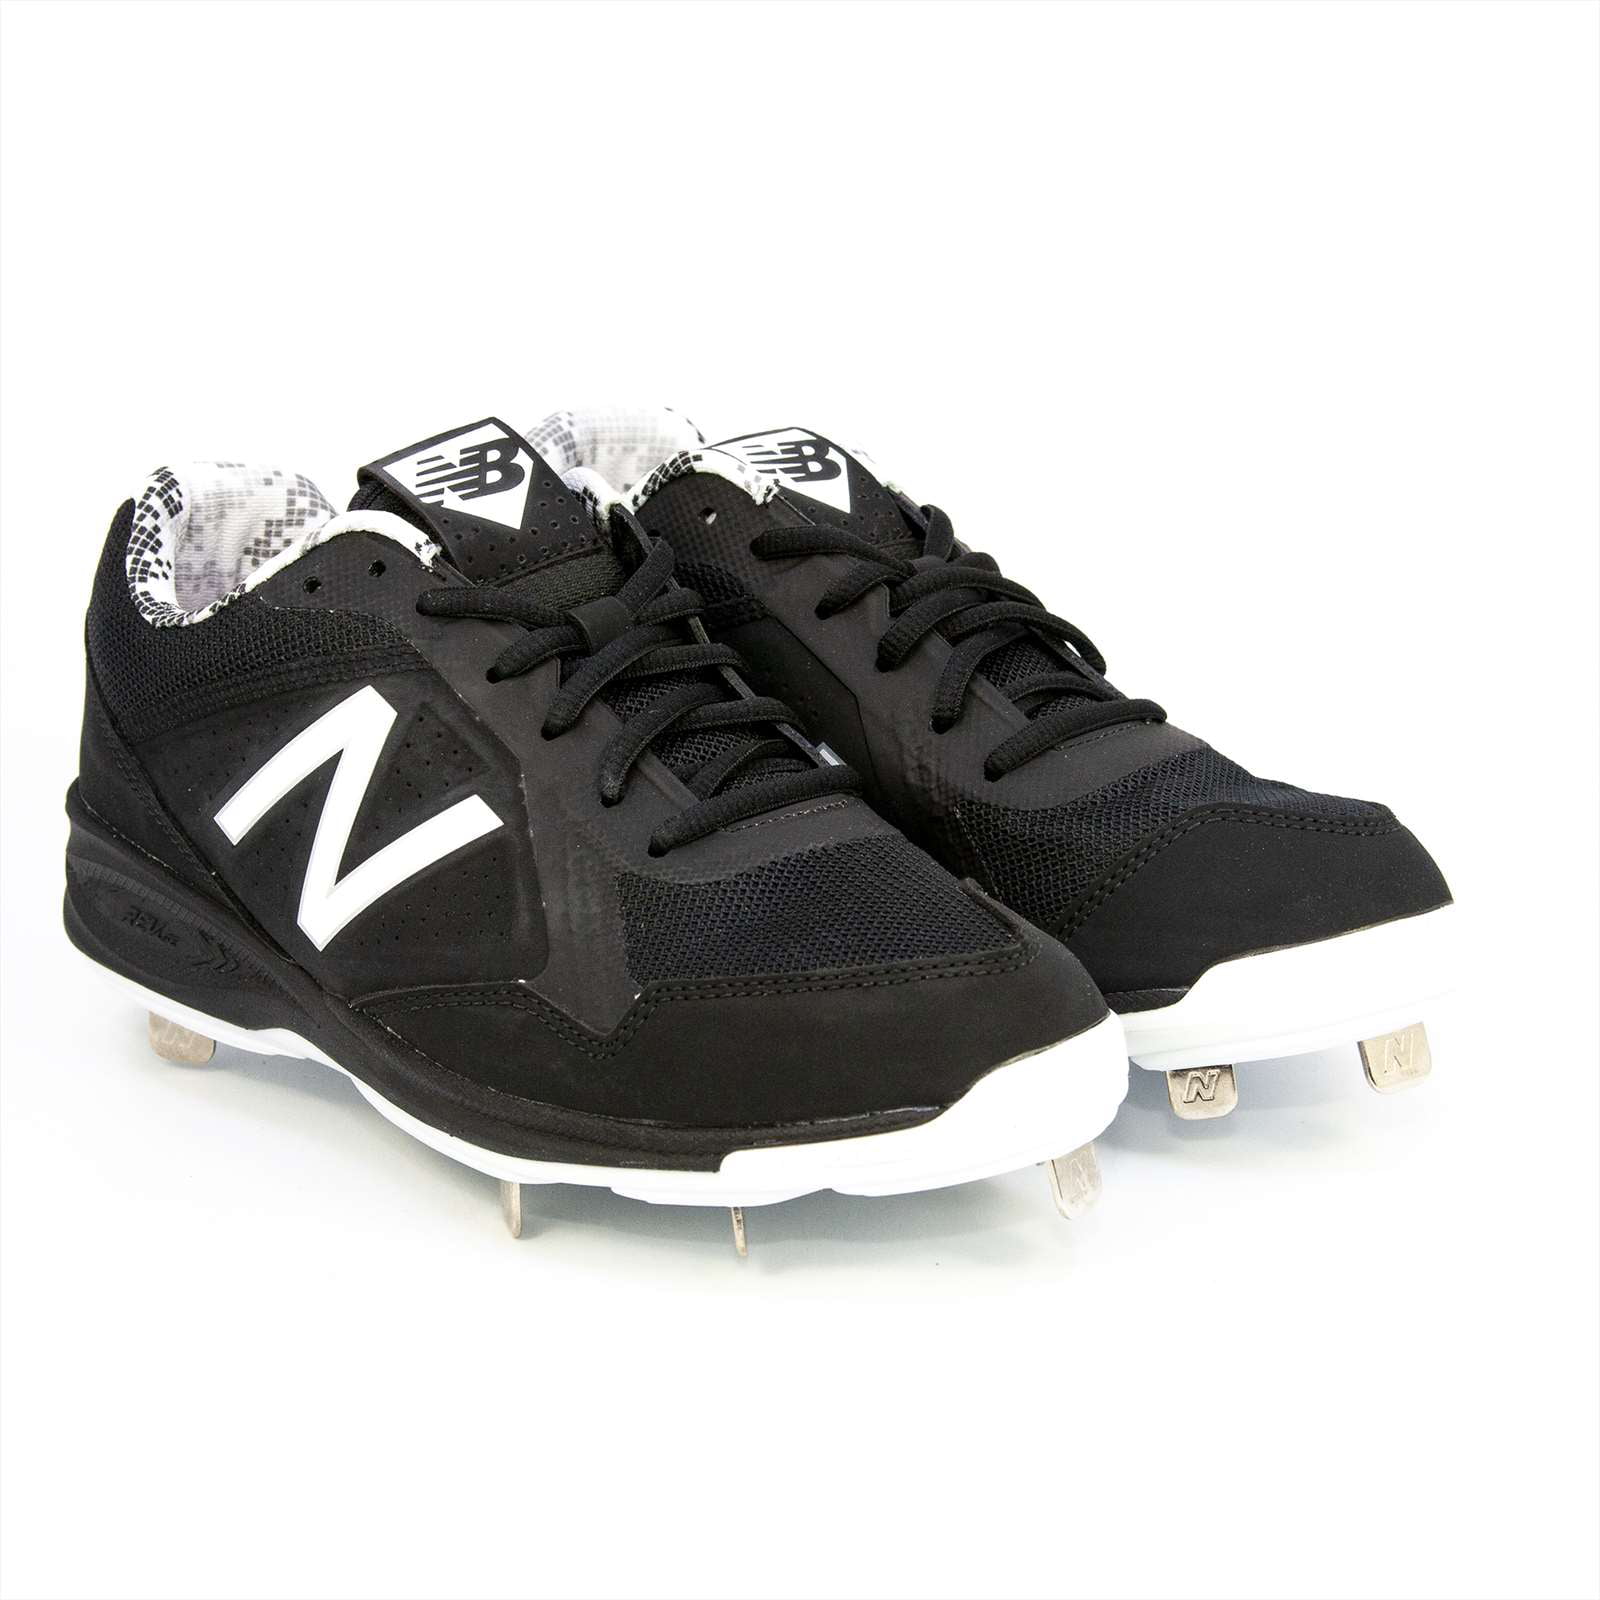 nb baseball shoes